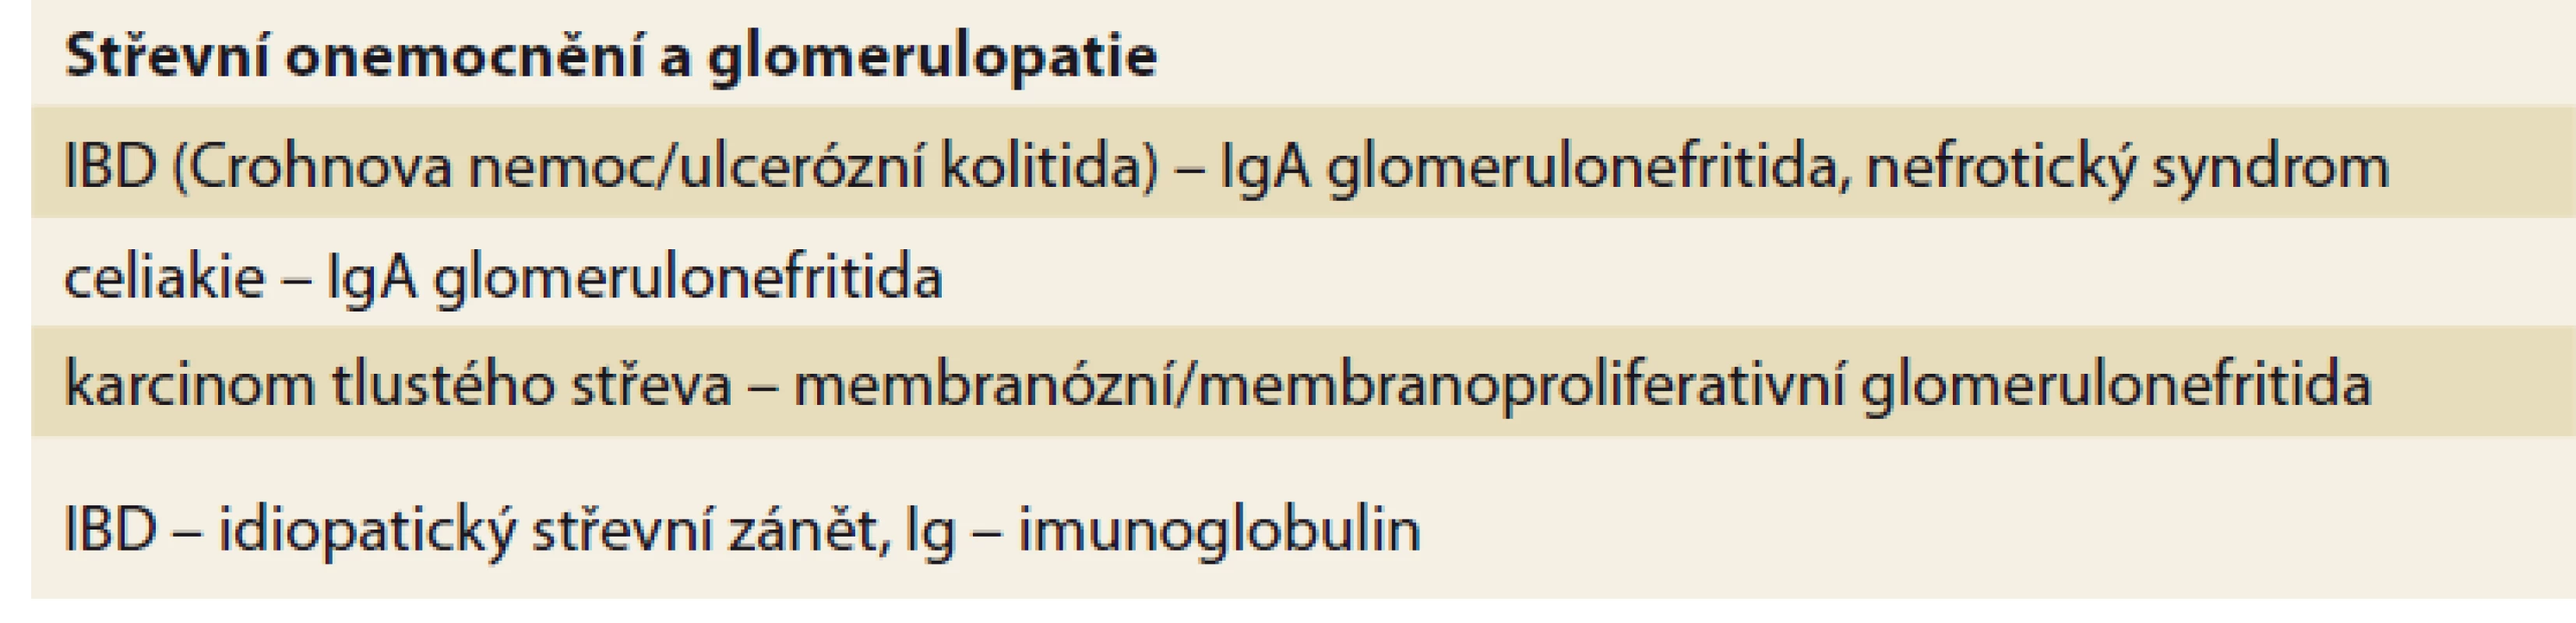 Střevní onemocnění a glomerulopatie.<br>
Tab. 1. Intestinal diseases and glomerulopathy